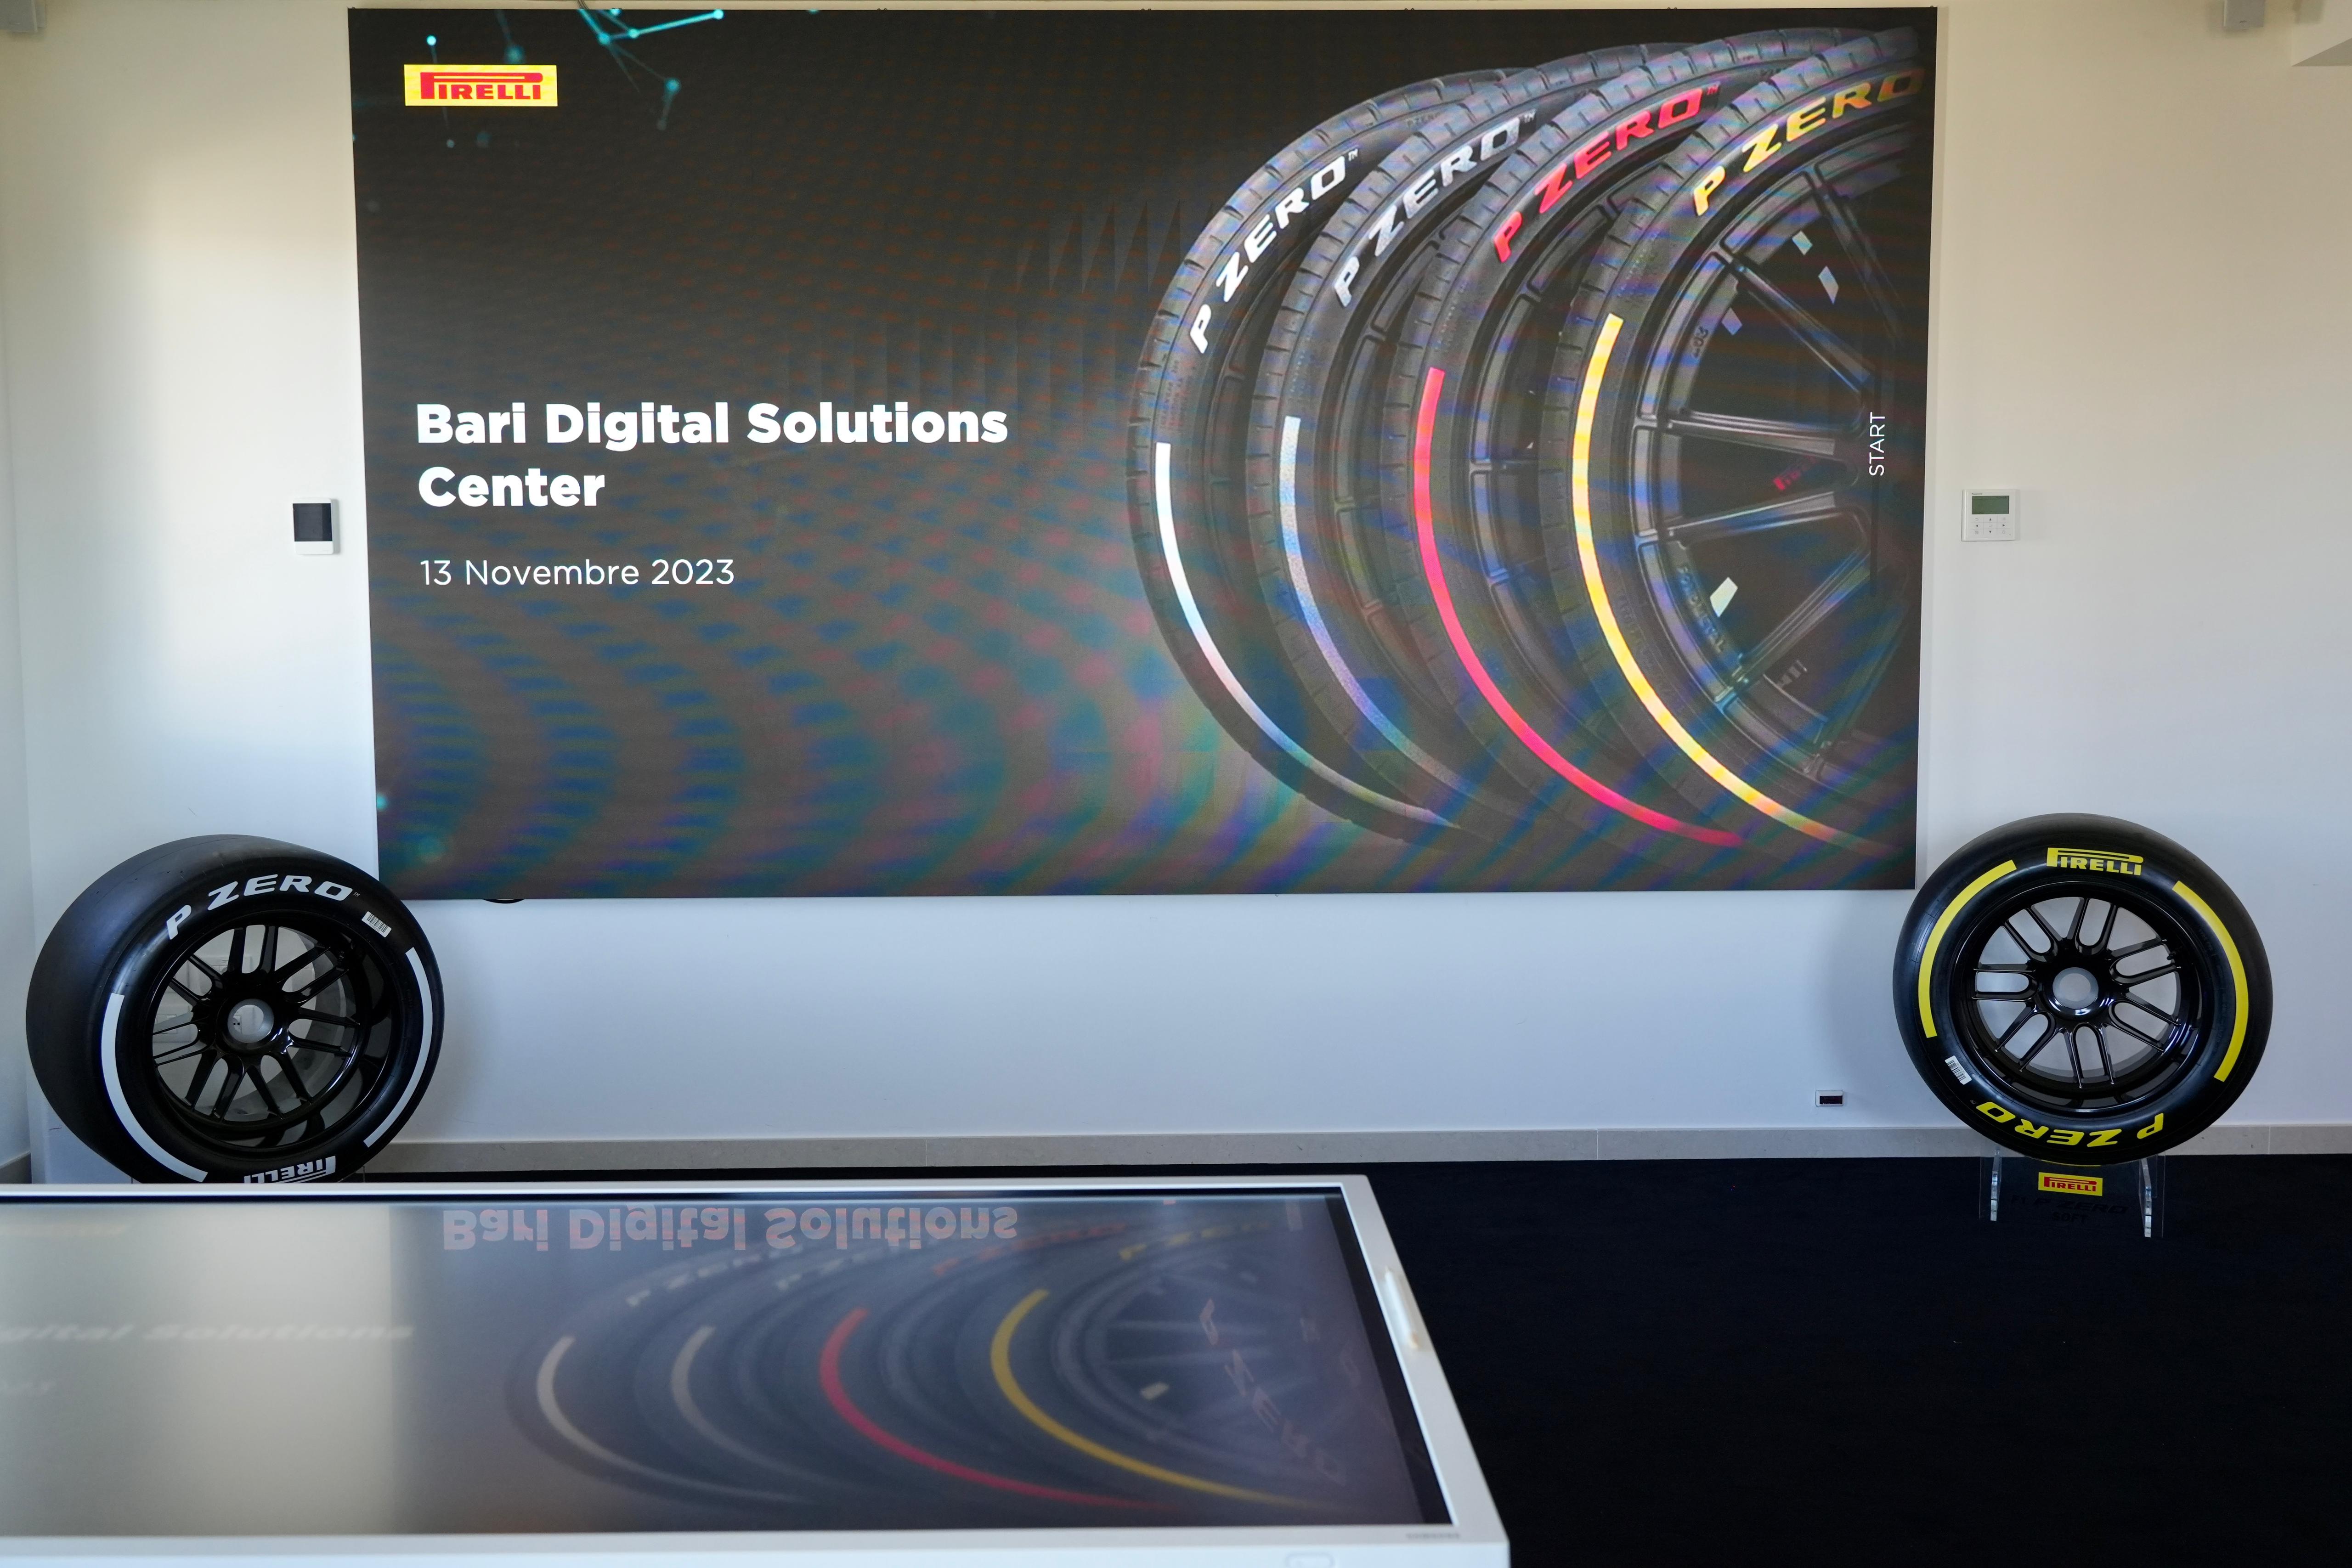 Galleria Pirelli: si rafforza a Bari, nel 2025 i dipendenti del Digital Solutions Center saliranno a 80 dai 50 previsti inizialmente - Diapositiva 5 di 13